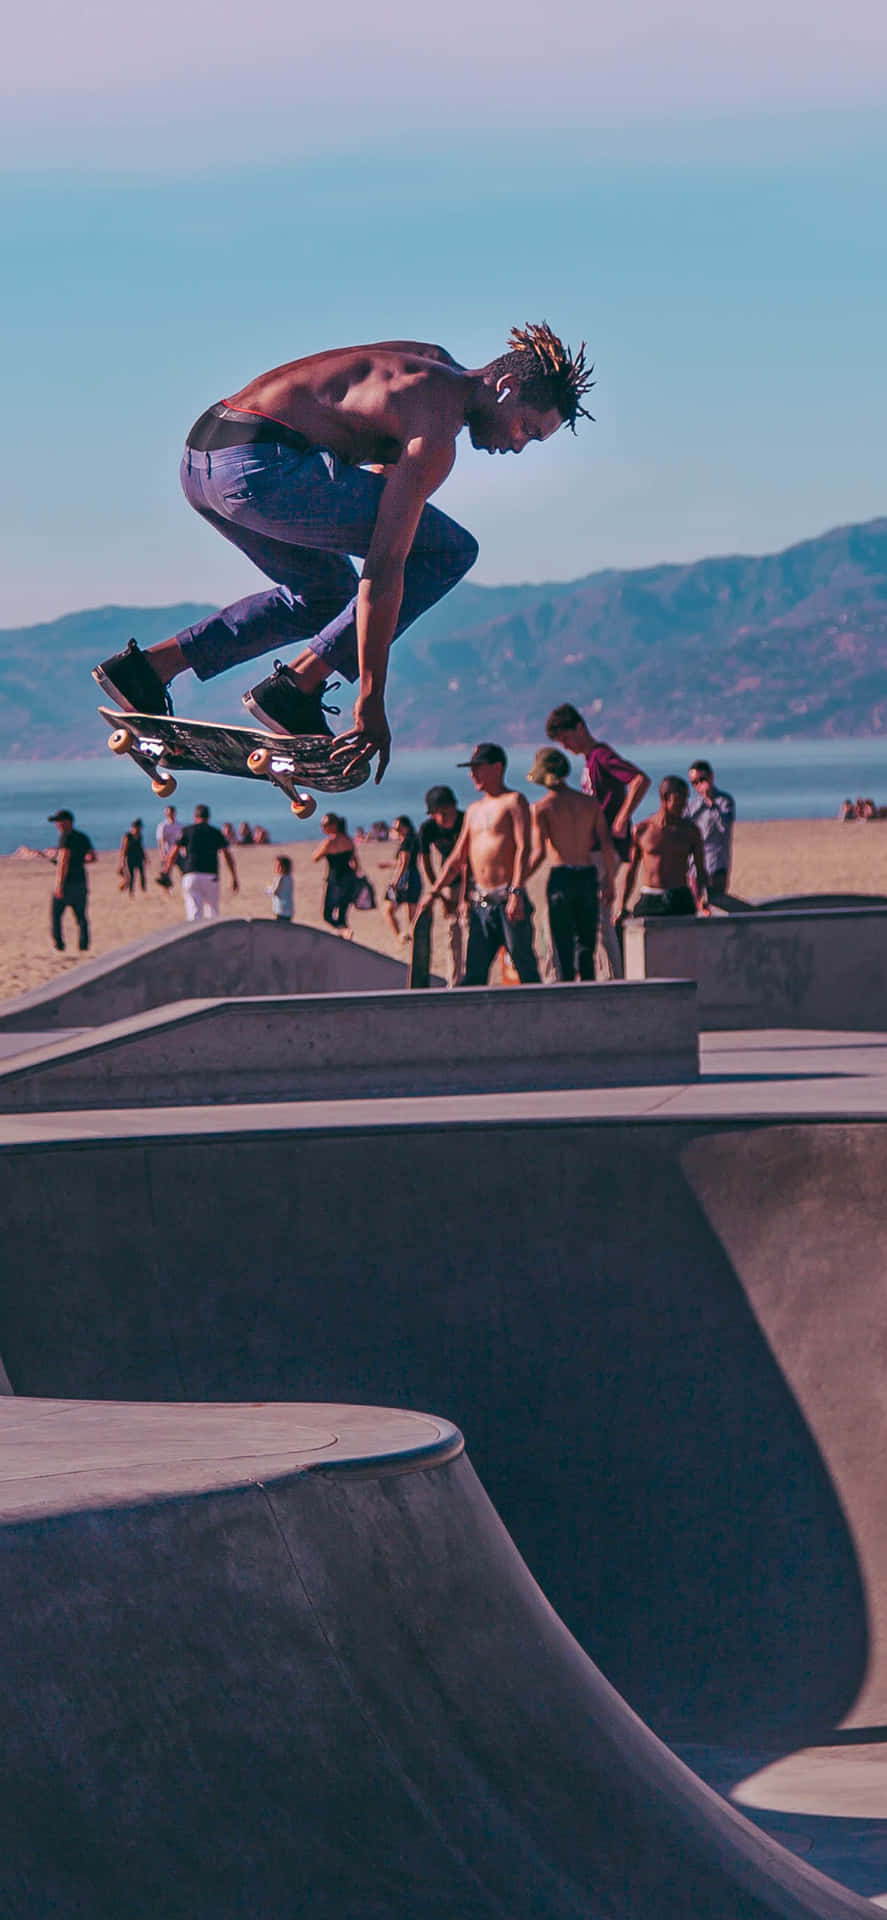 En mand udfører et trick på en skateboard. Wallpaper